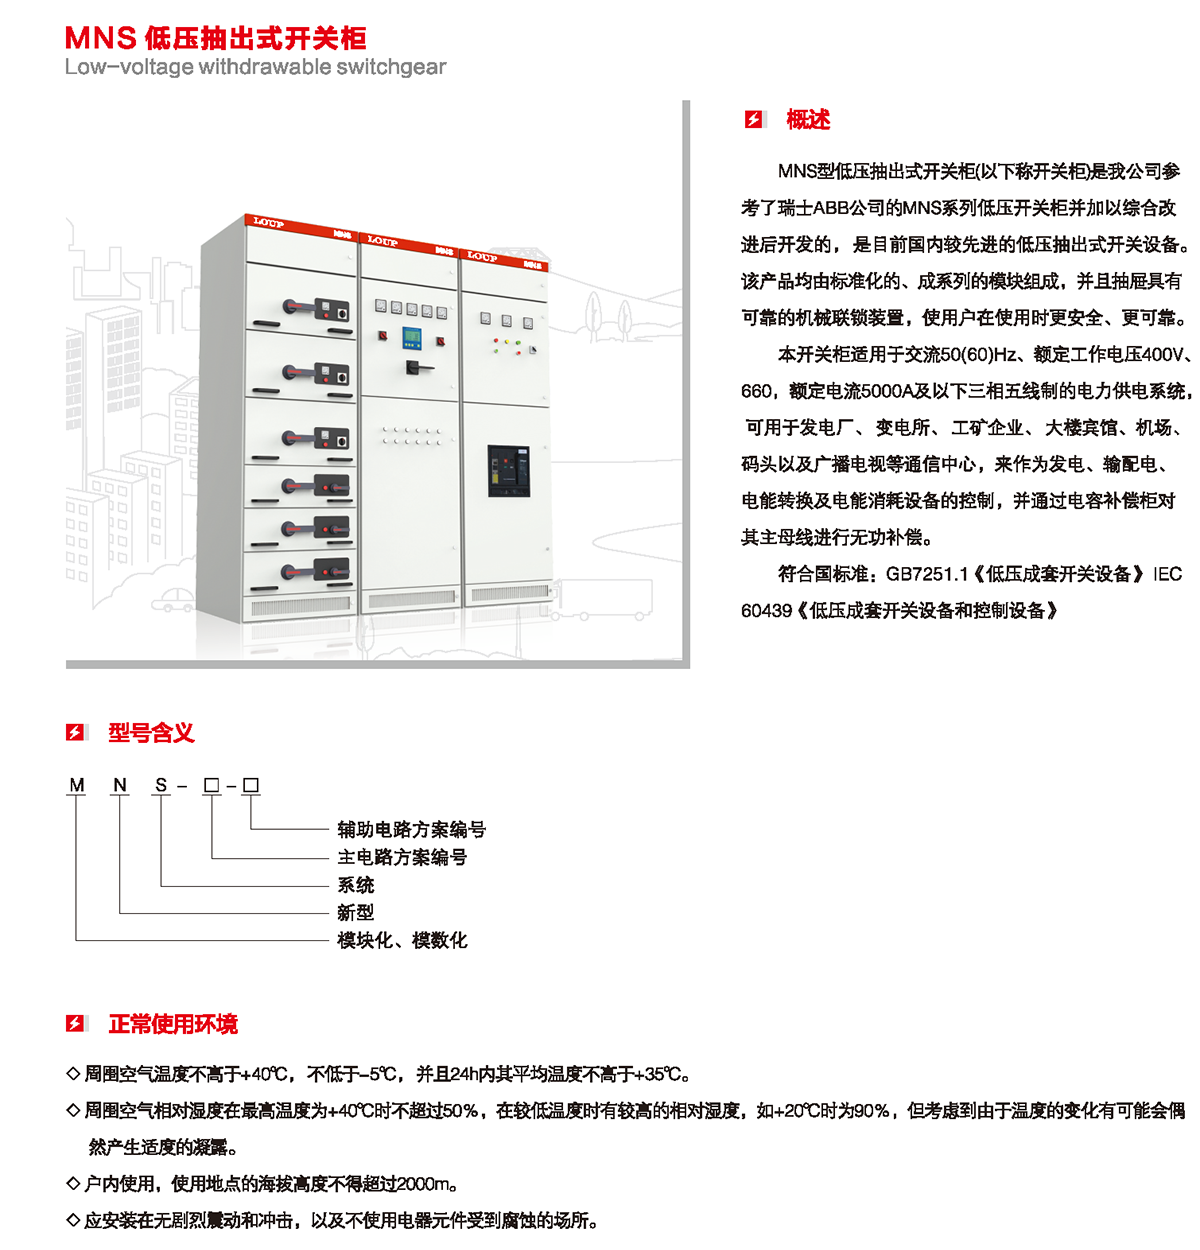 MNS低壓抽出式開關柜概述、型號含義、正常使用環境